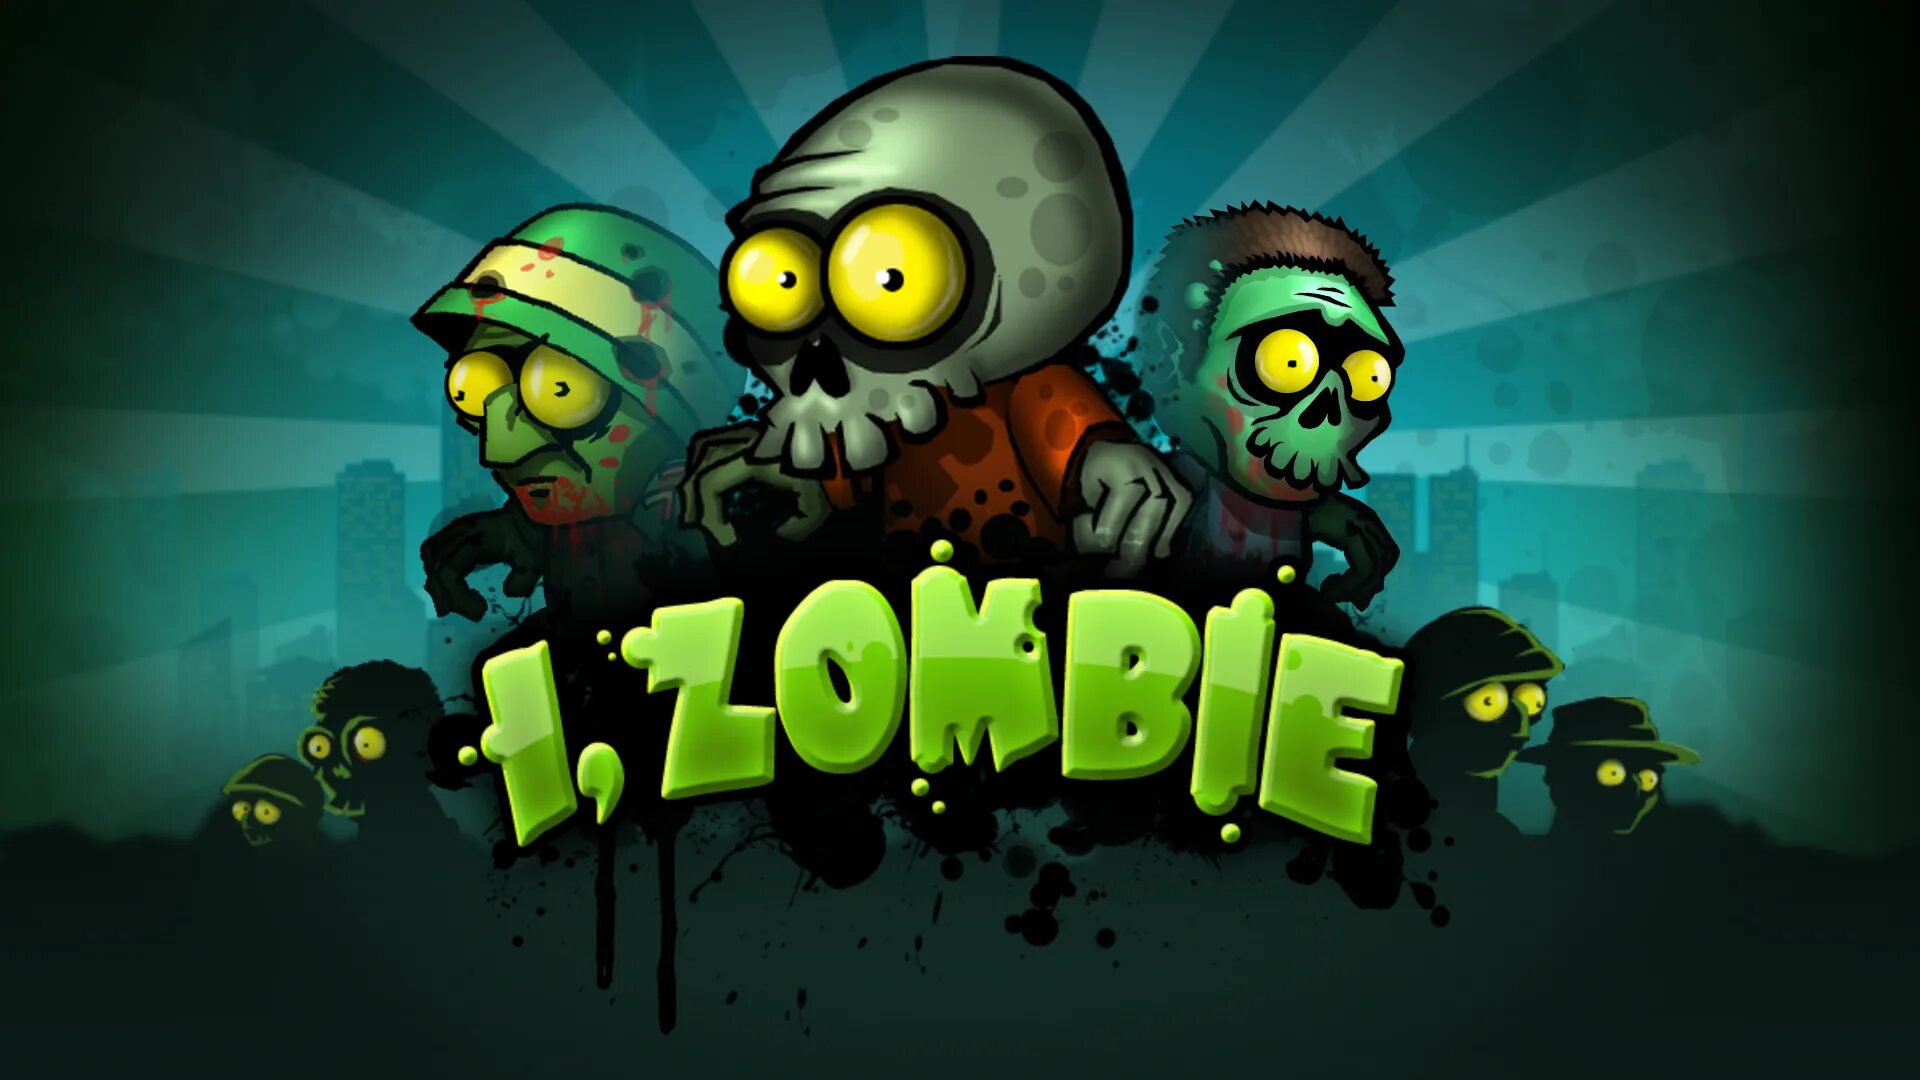 Зомби 1 уровень. I Zombie игра. Игра про первую мировую и зомби.